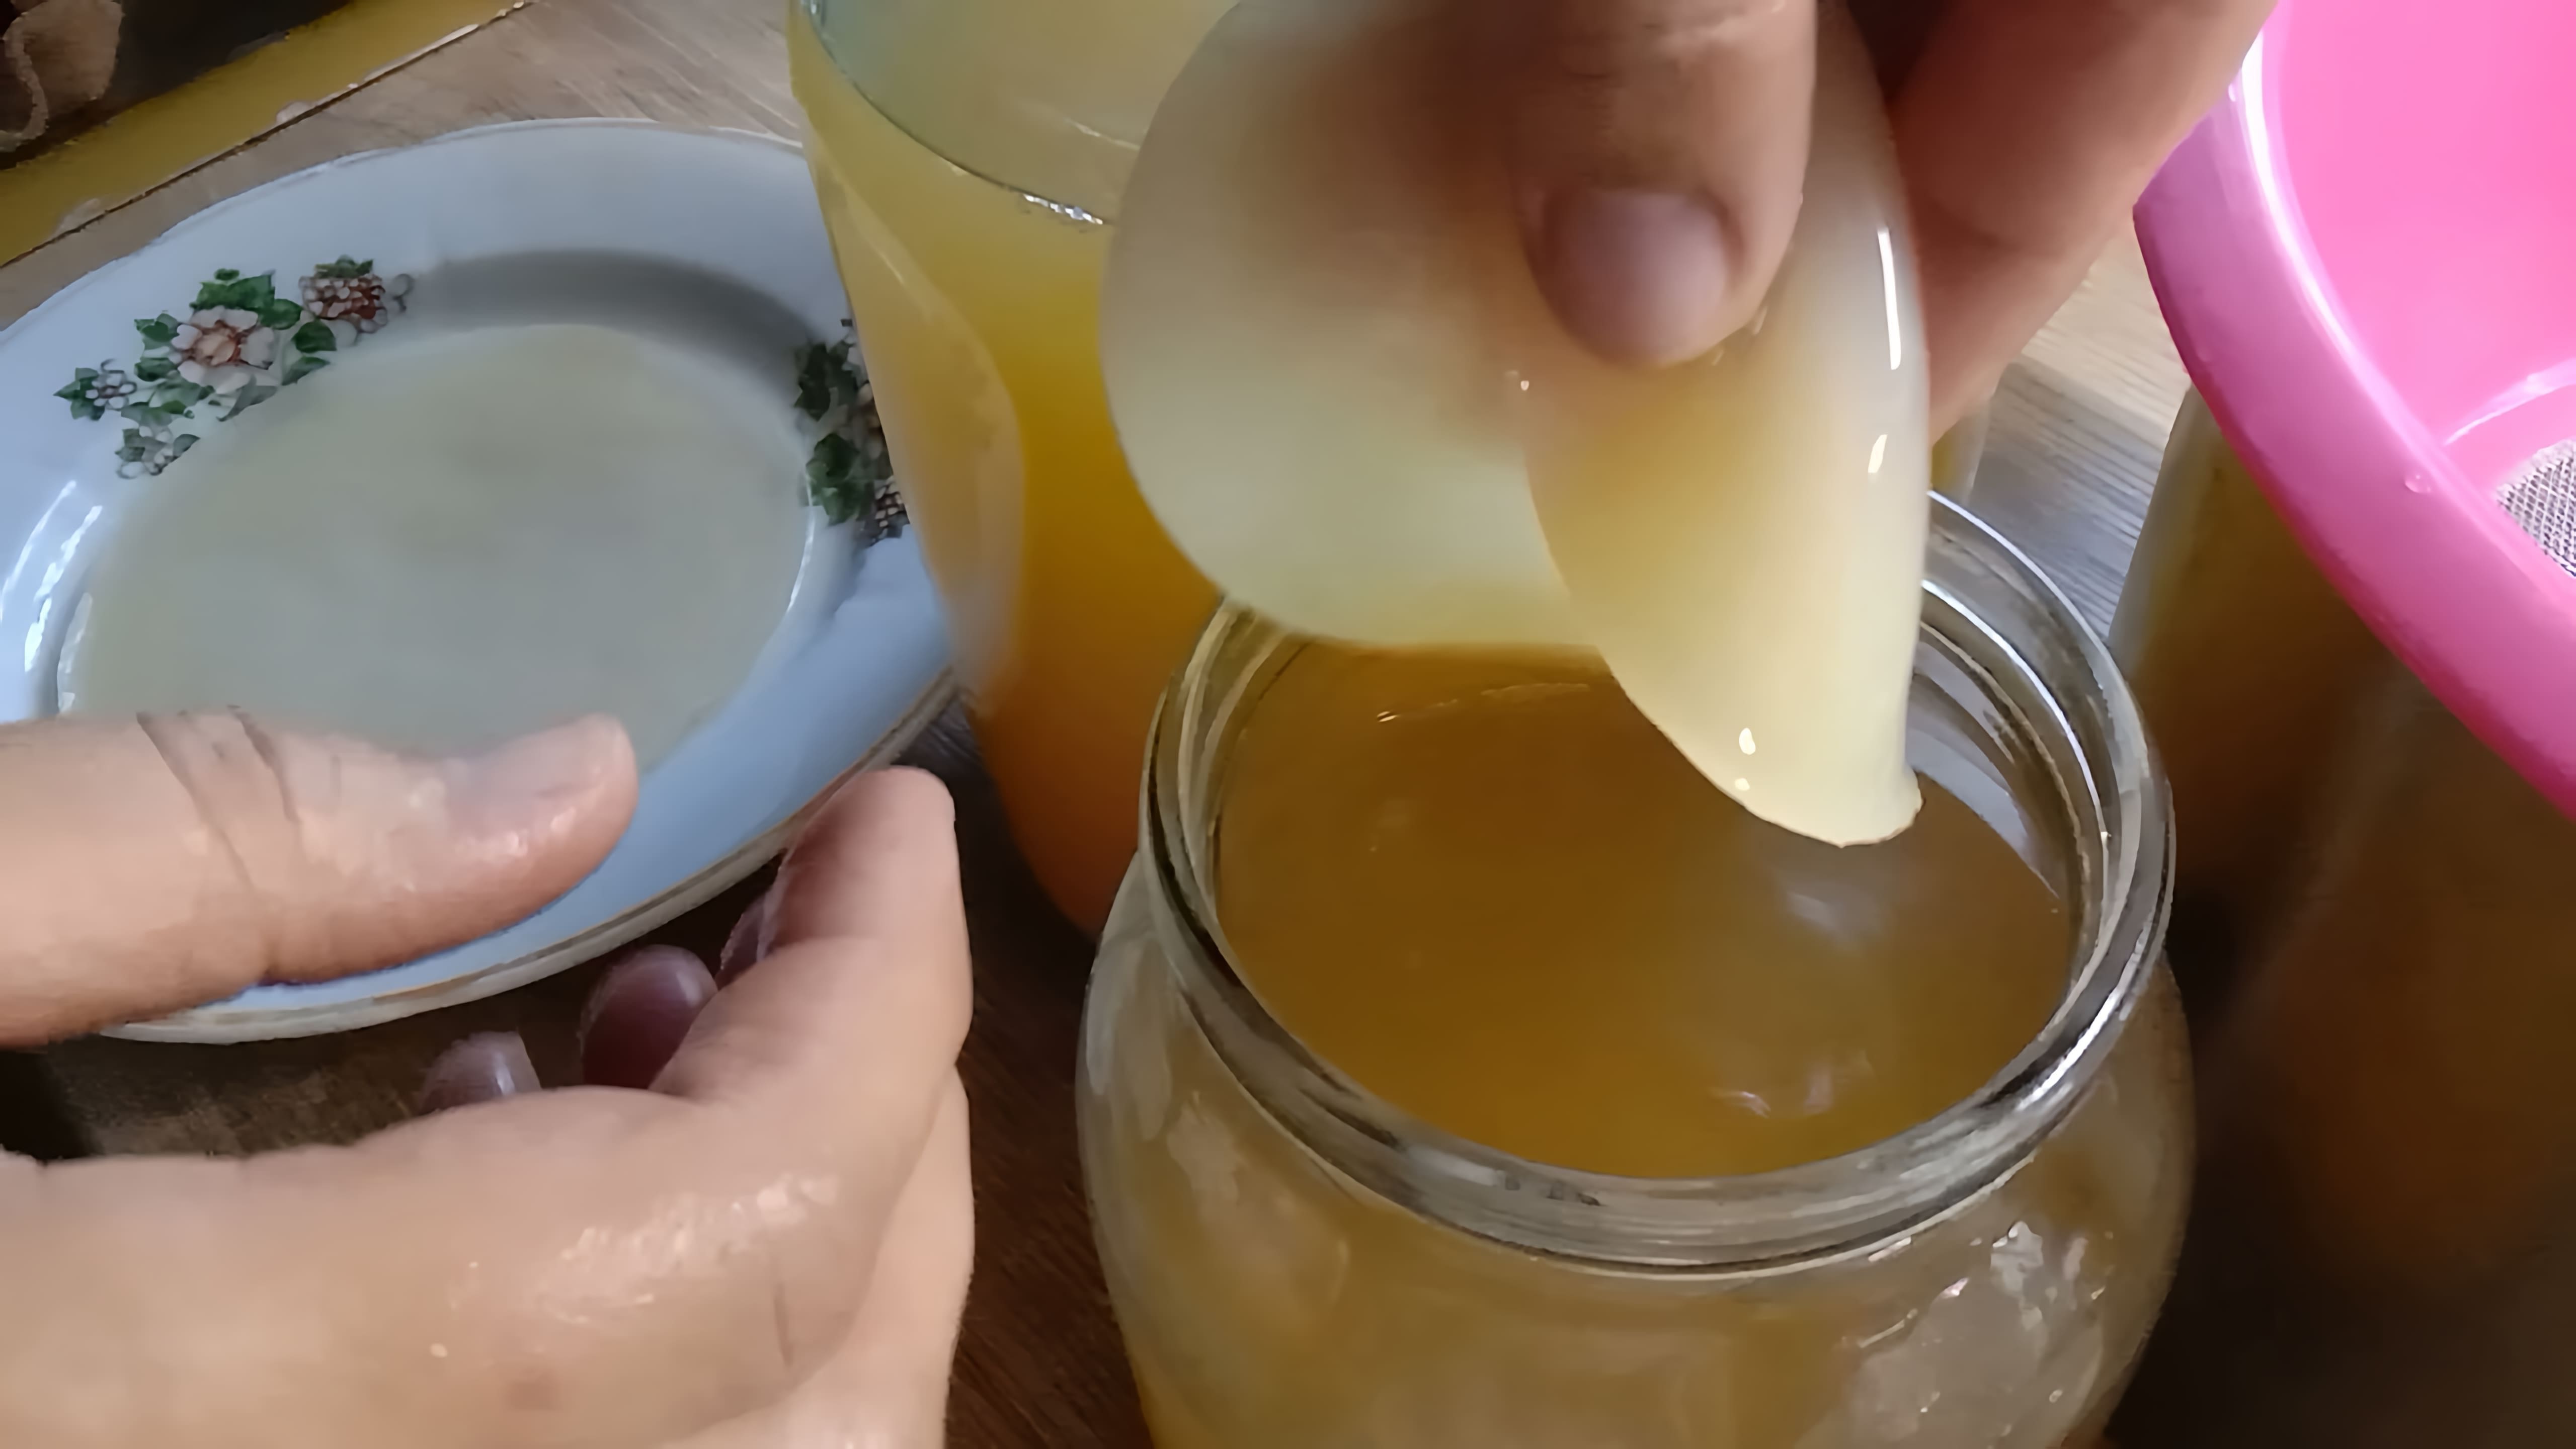 В данном видео демонстрируется процесс приготовления яблочного уксуса с использованием уксусной матки